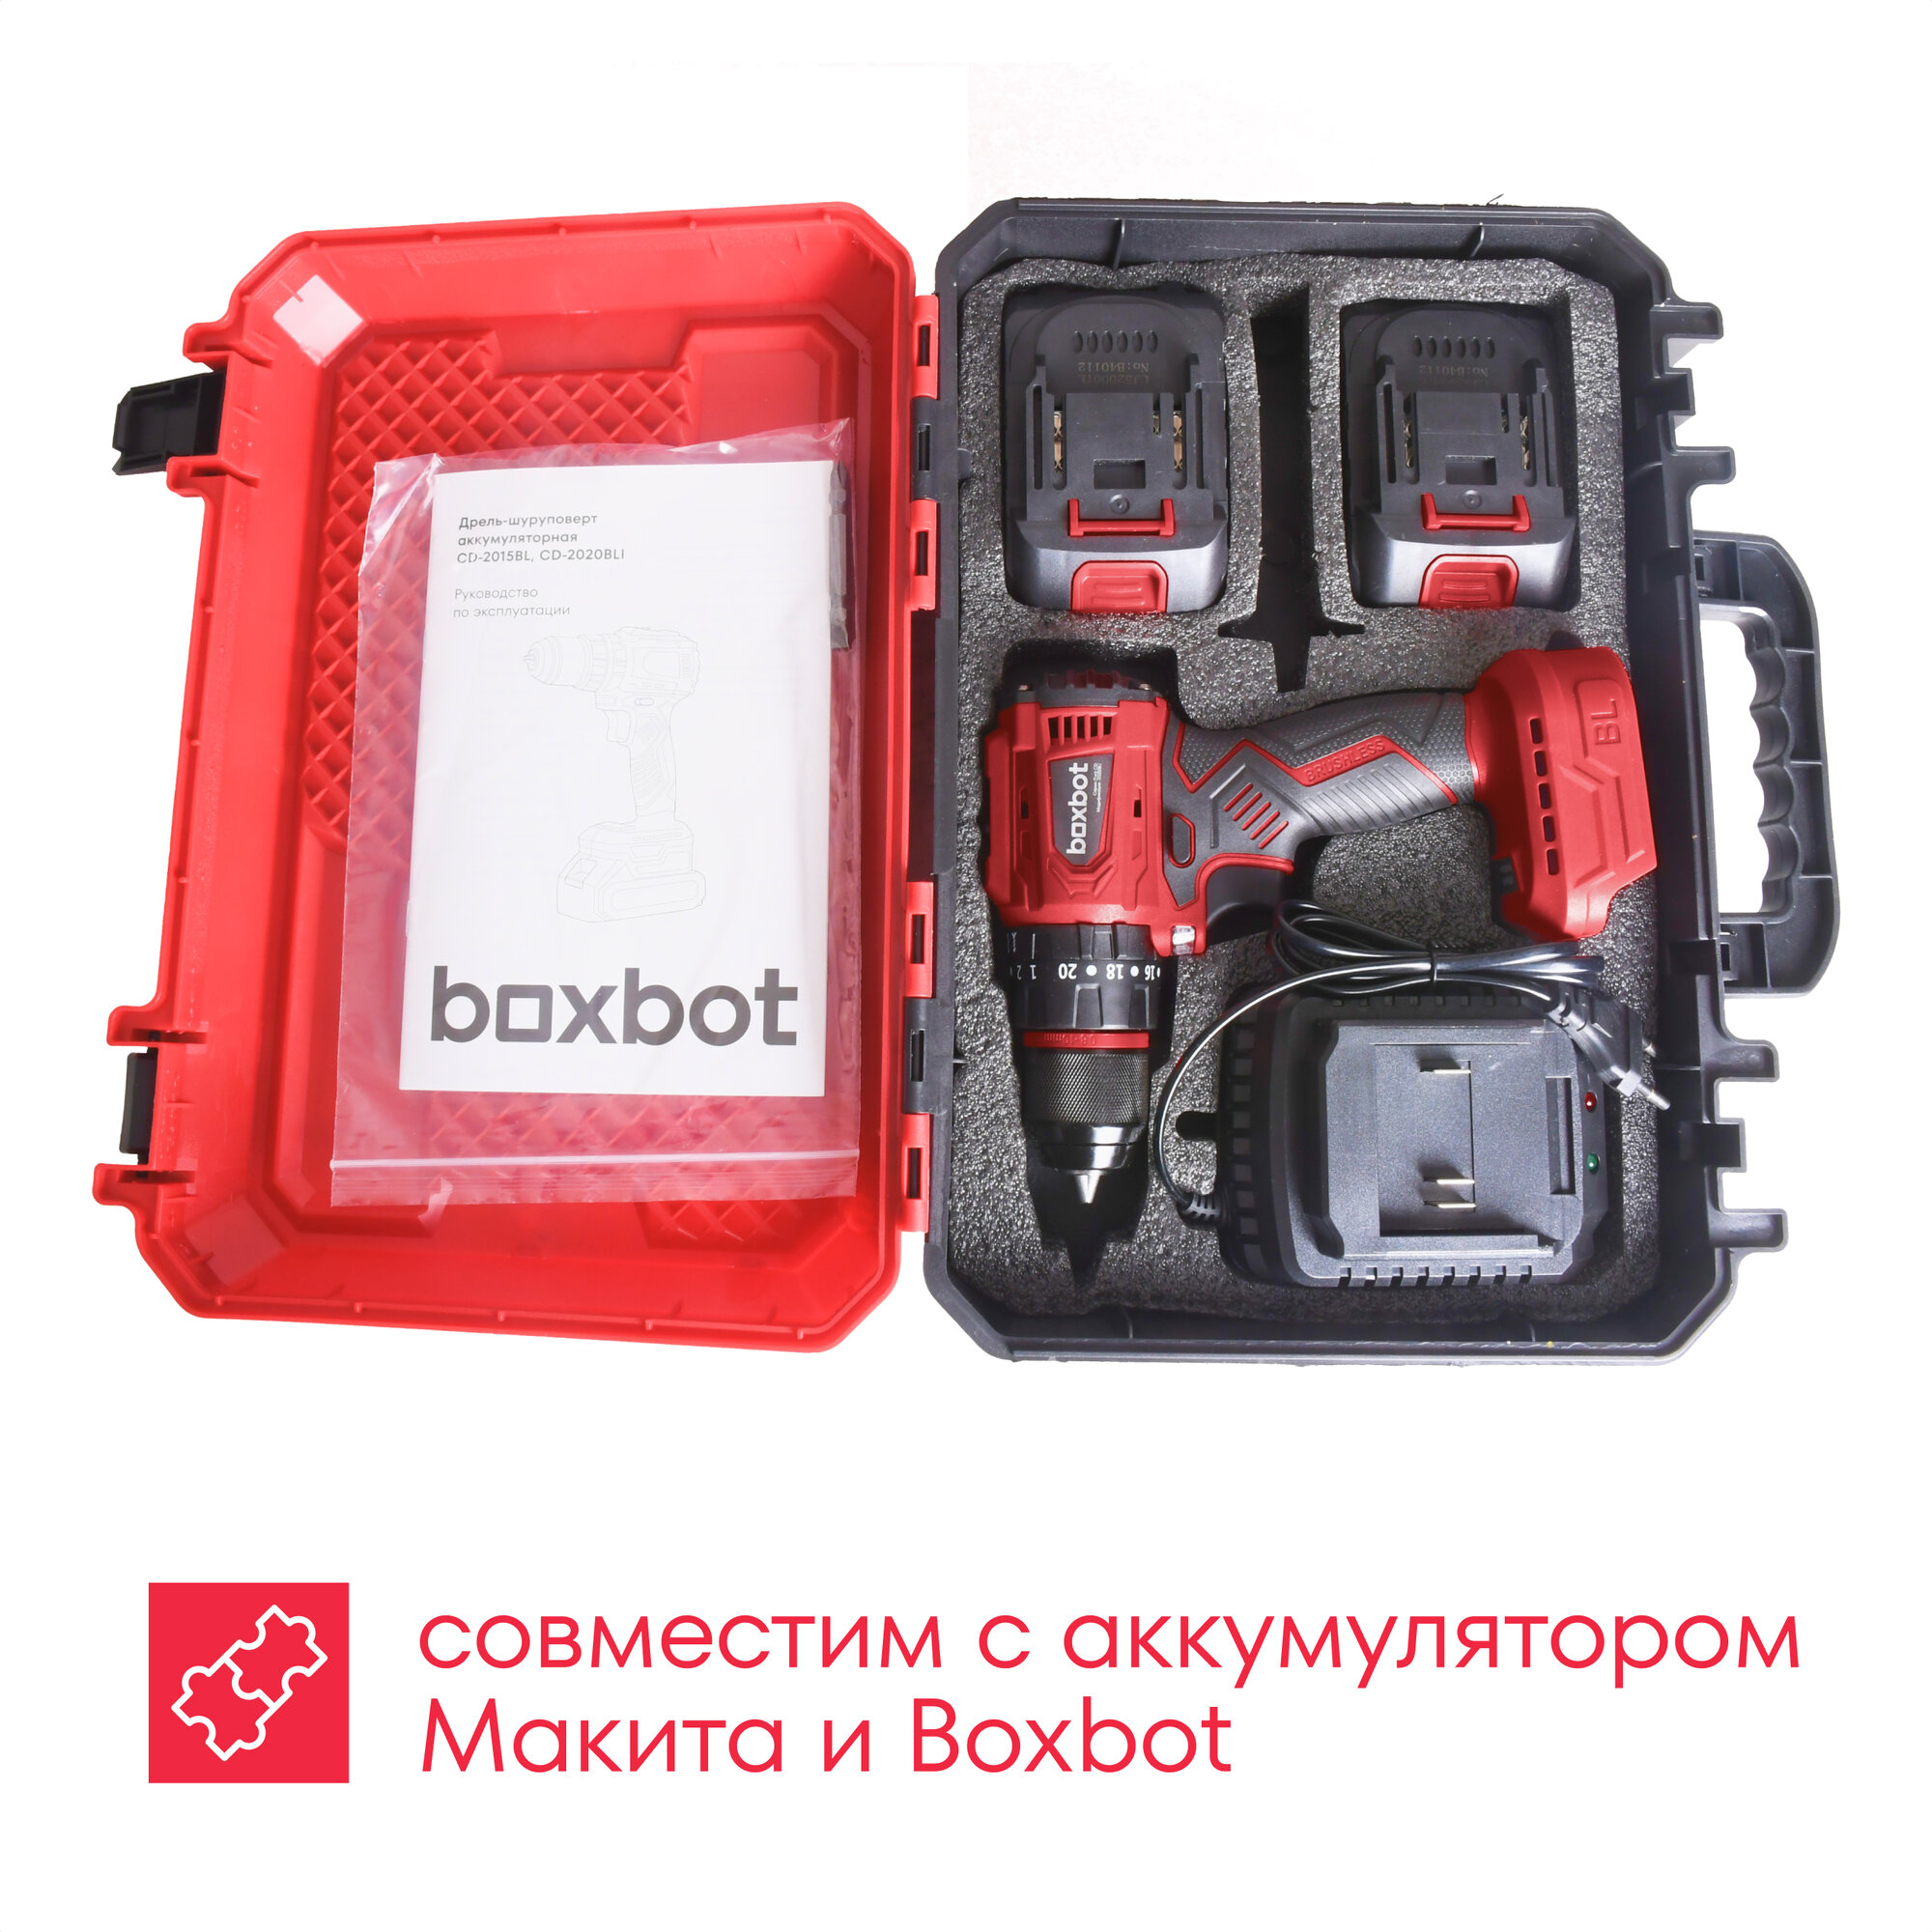 Аккумуляторная бесщеточная дрель-шуруповерт Boxbot 20В, 2 АКБ, 2 Ач, в кейсе, CD-2020BLI